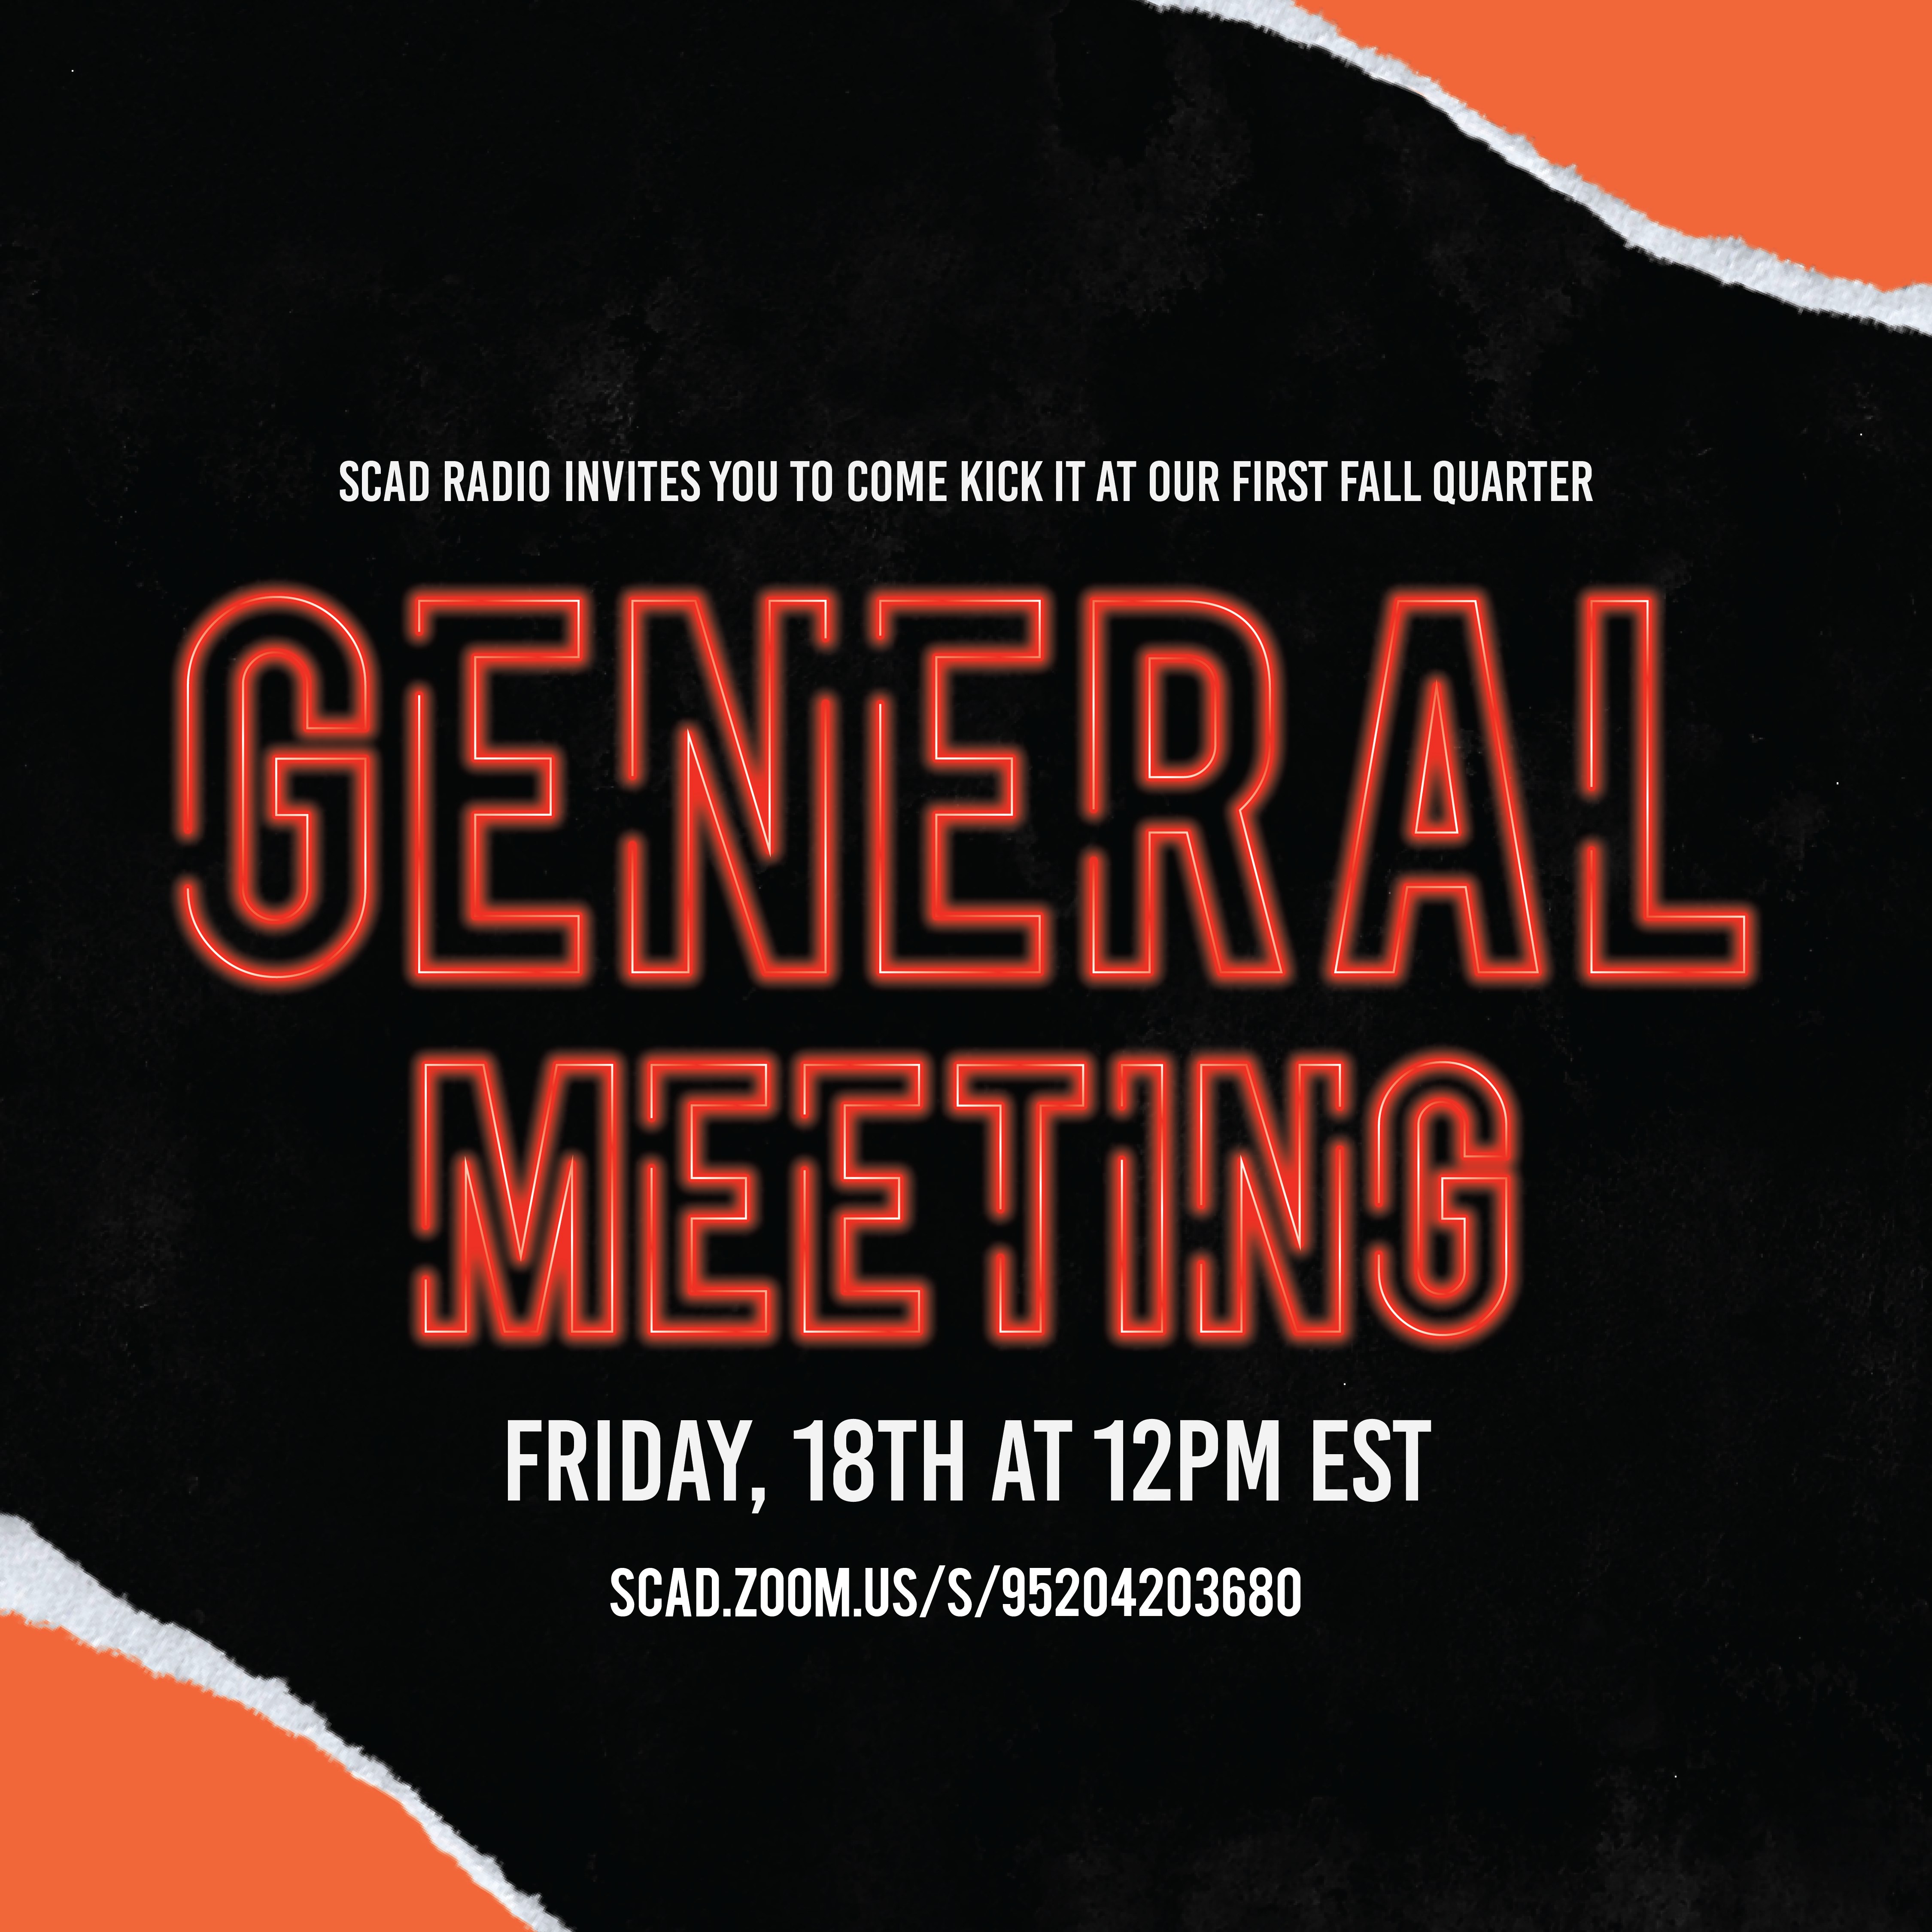 Weekly General Meetings